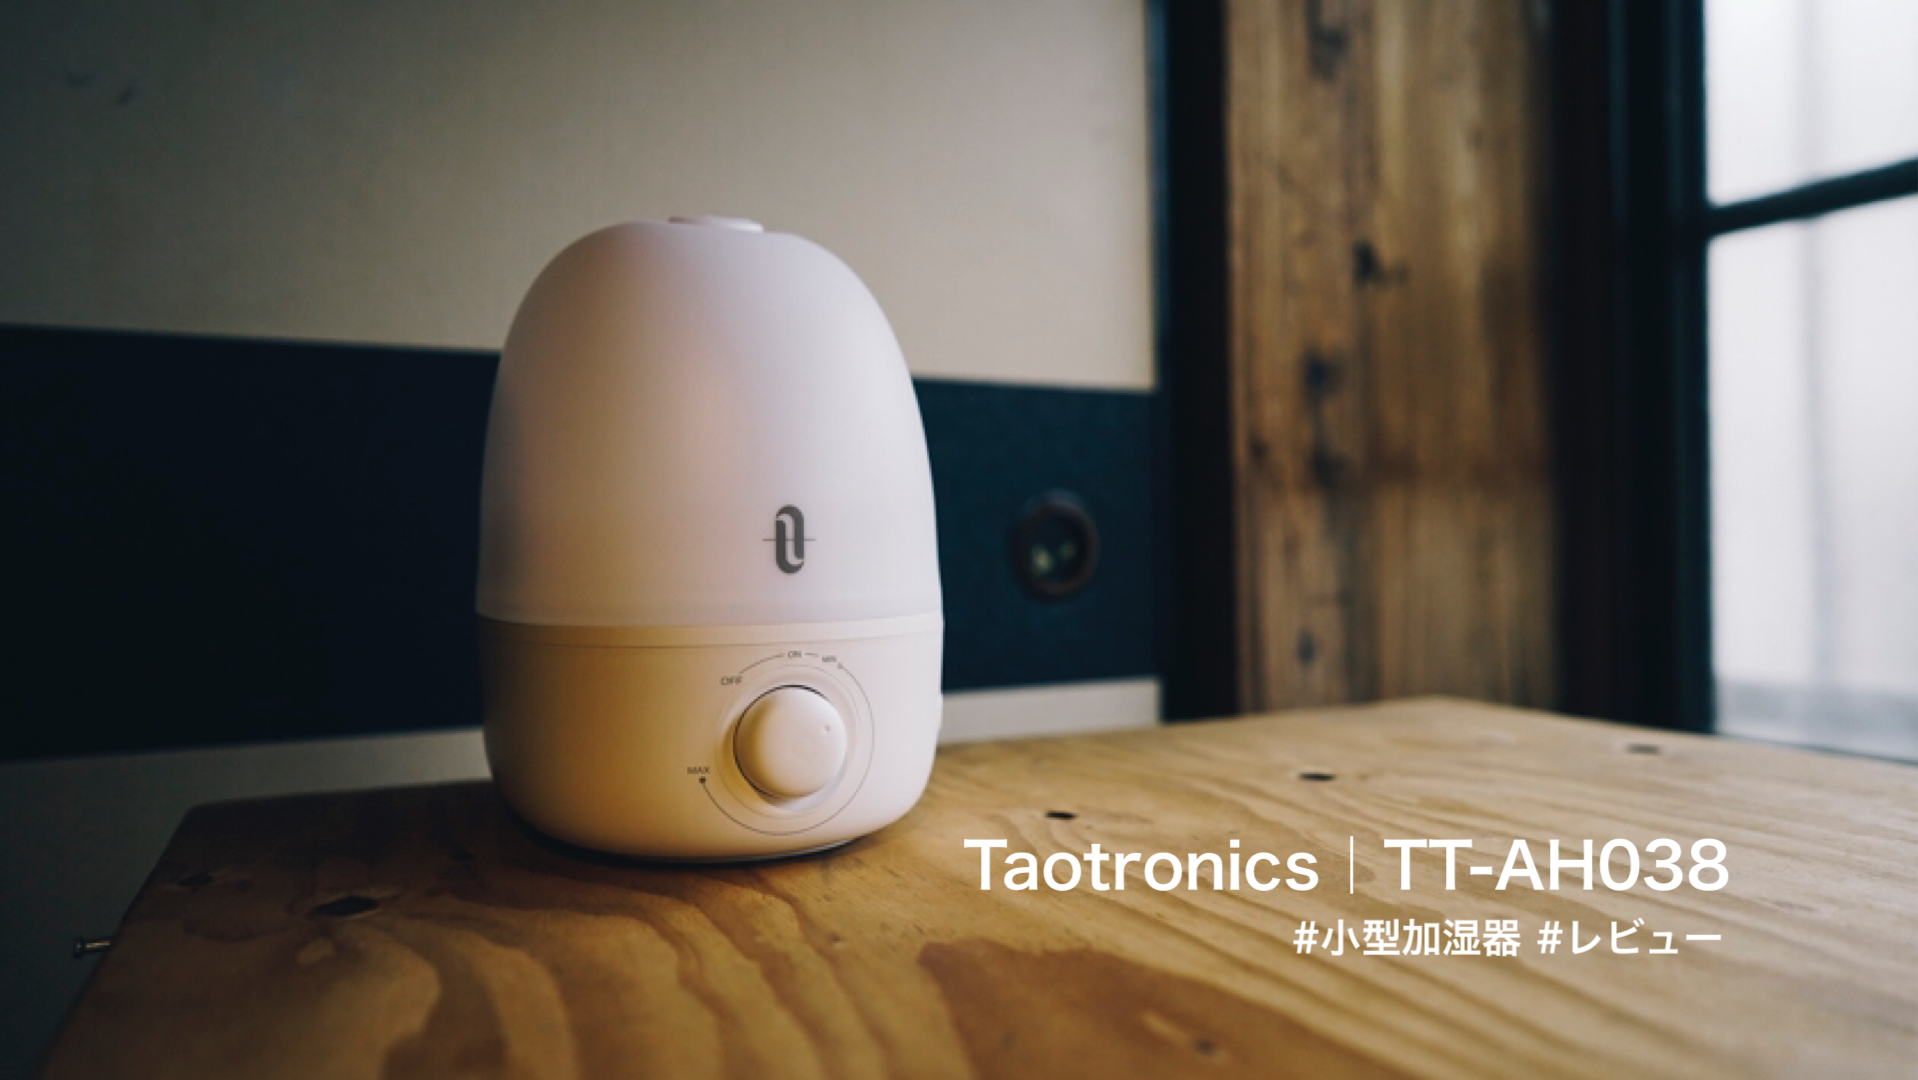 【レビュー】TAOTRONICS TT-AH038│寝室にぴったりサイズの小型加湿器